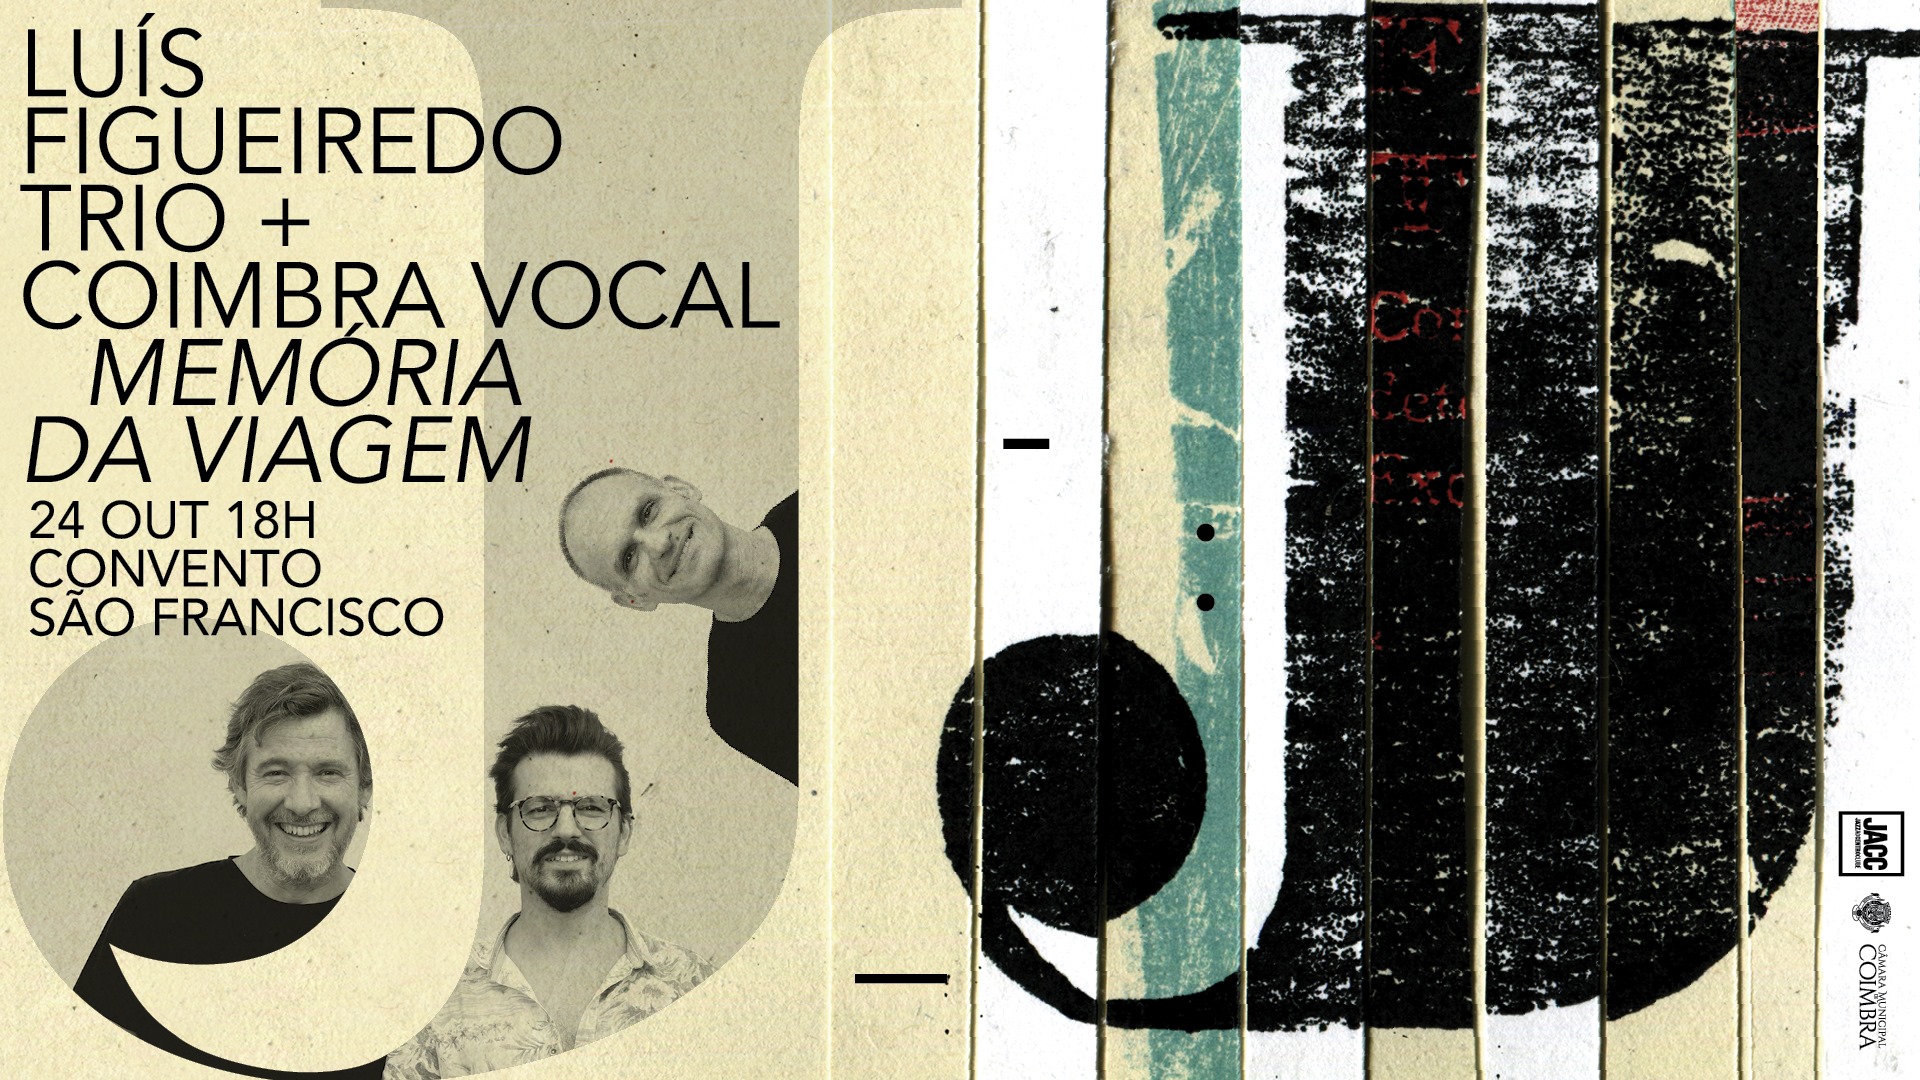 Luís Figueiredo Trio + Coro Coimbra Vocal 'Memória da Viagem'